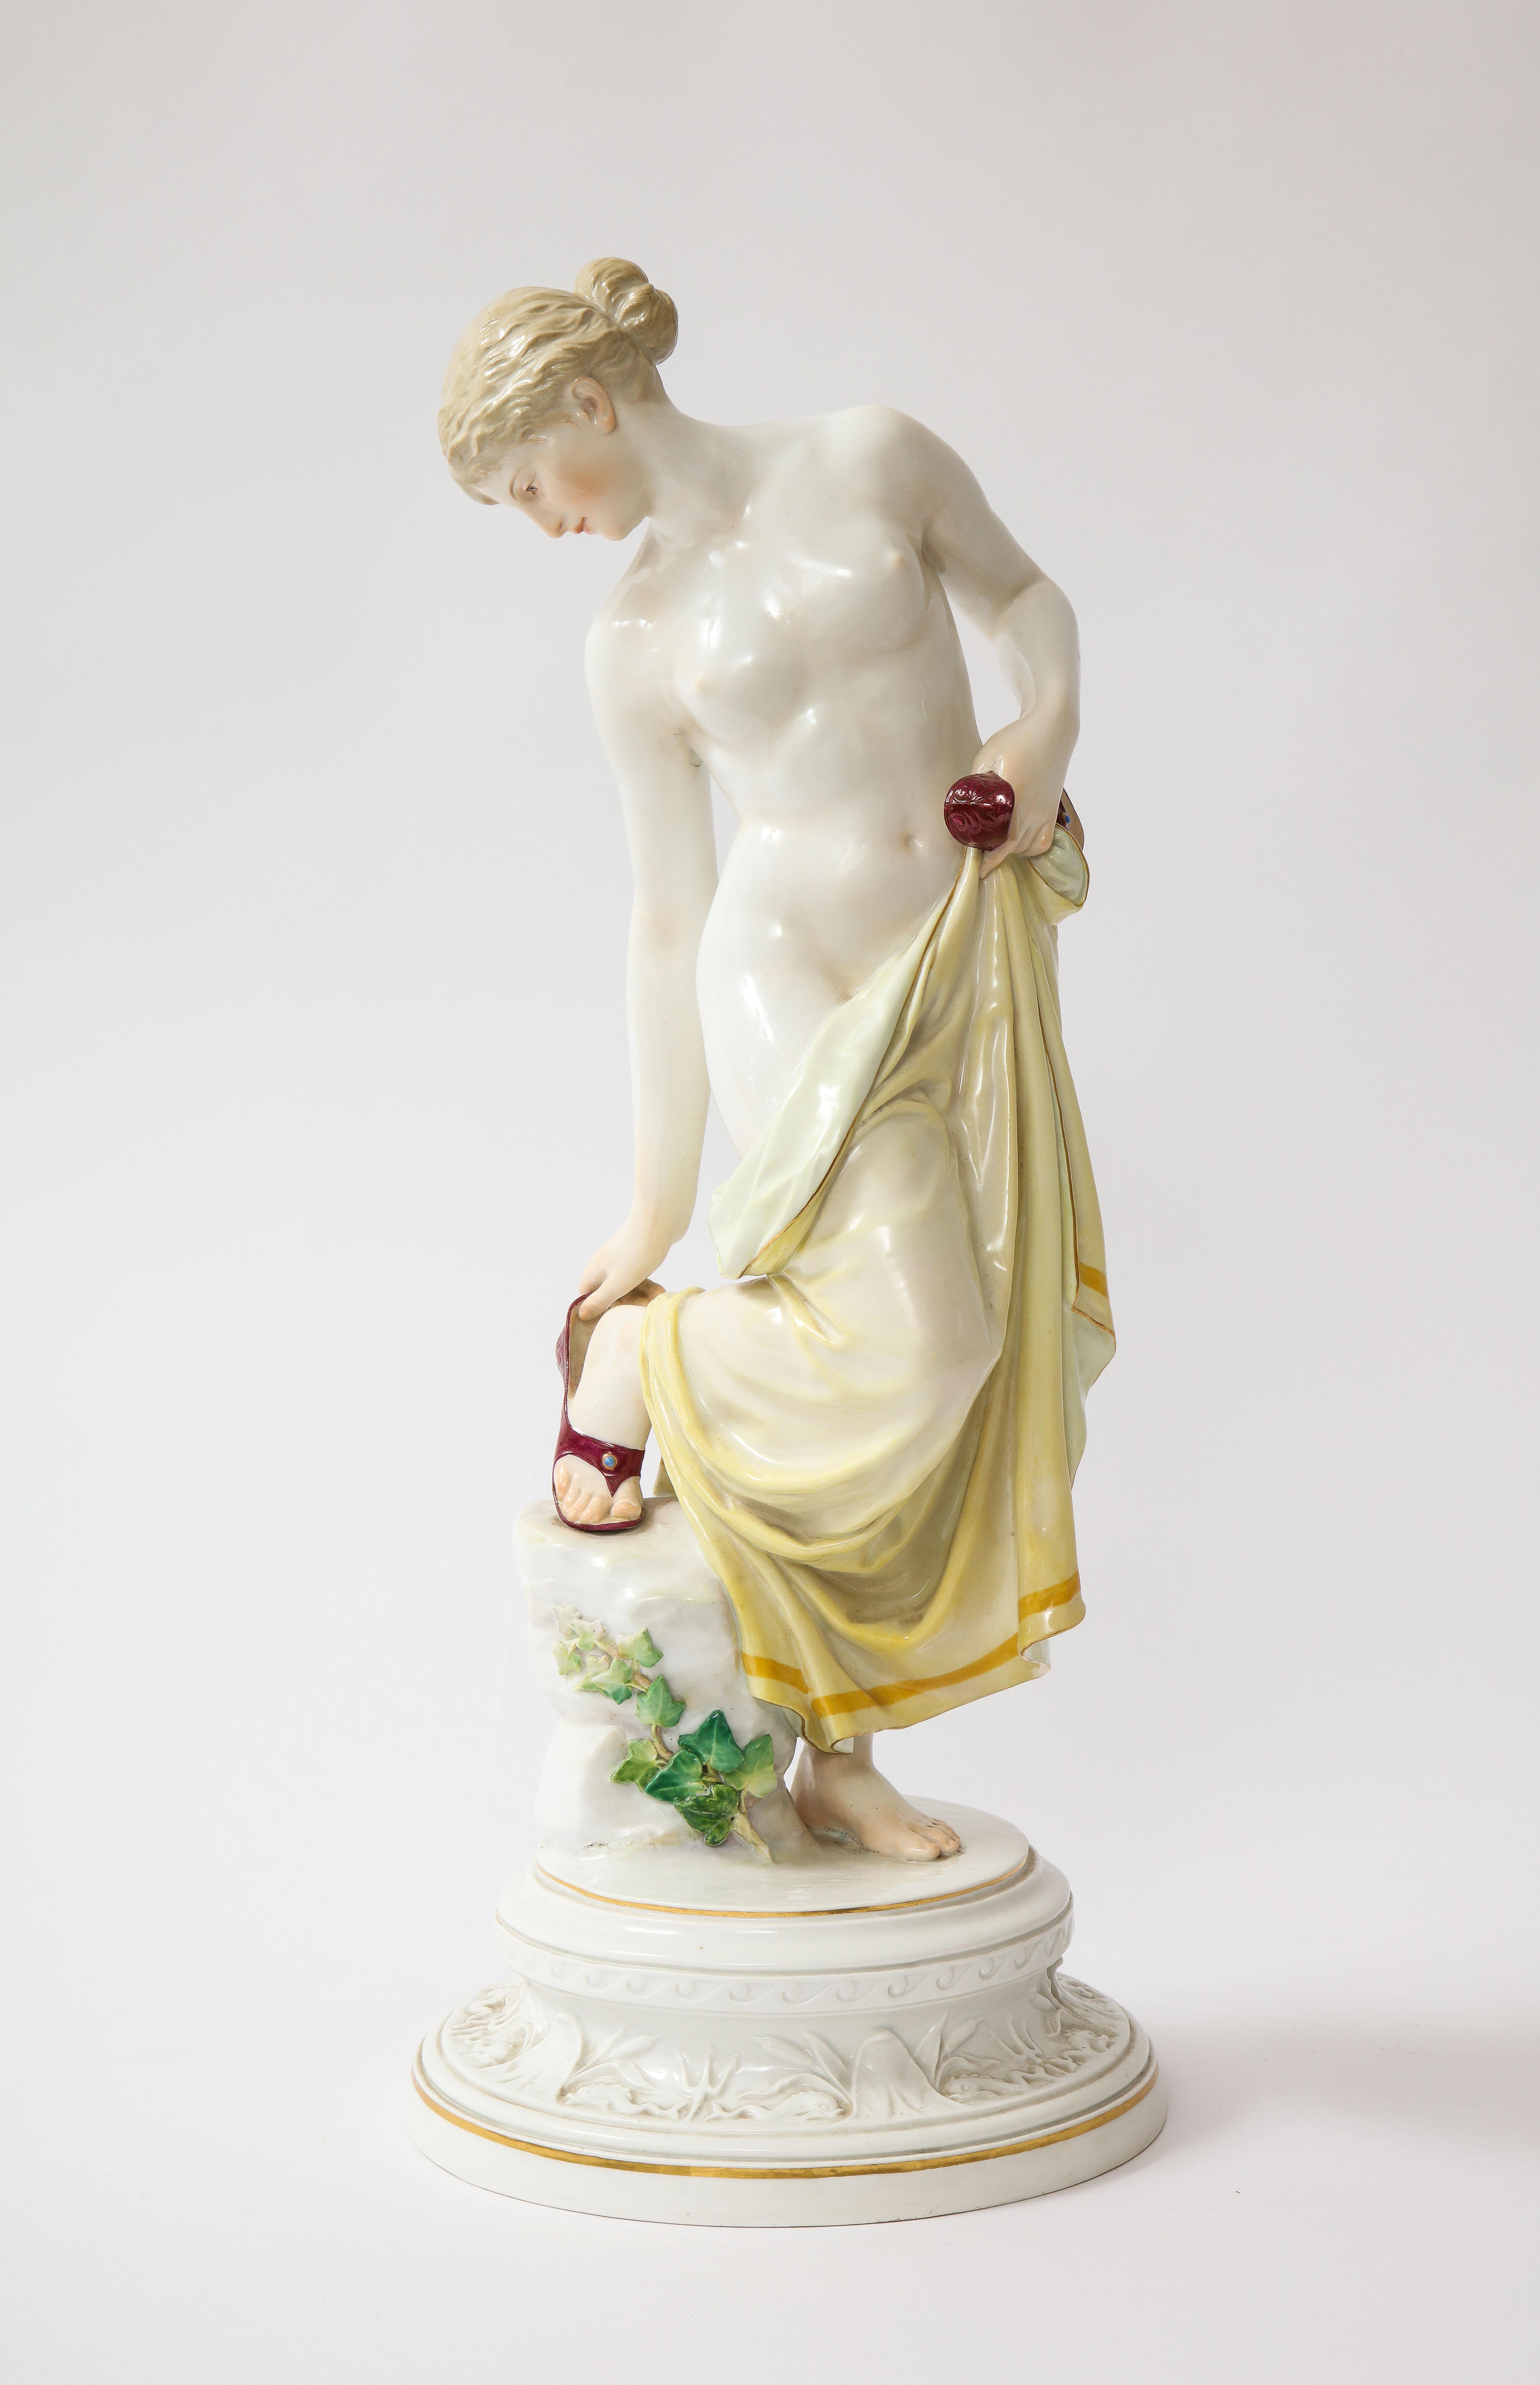 Ein weiblicher Akt aus Meissener Porzellan aus dem 19. Jahrhundert nach dem Bad, M 193b, R. Ockelmann.  Diese exquisite Porzellanskulptur wurde von dem begabten Künstler R. Ockelmann kunstvoll geschaffen.  Die Figur stellt eine teilweise nackte Frau